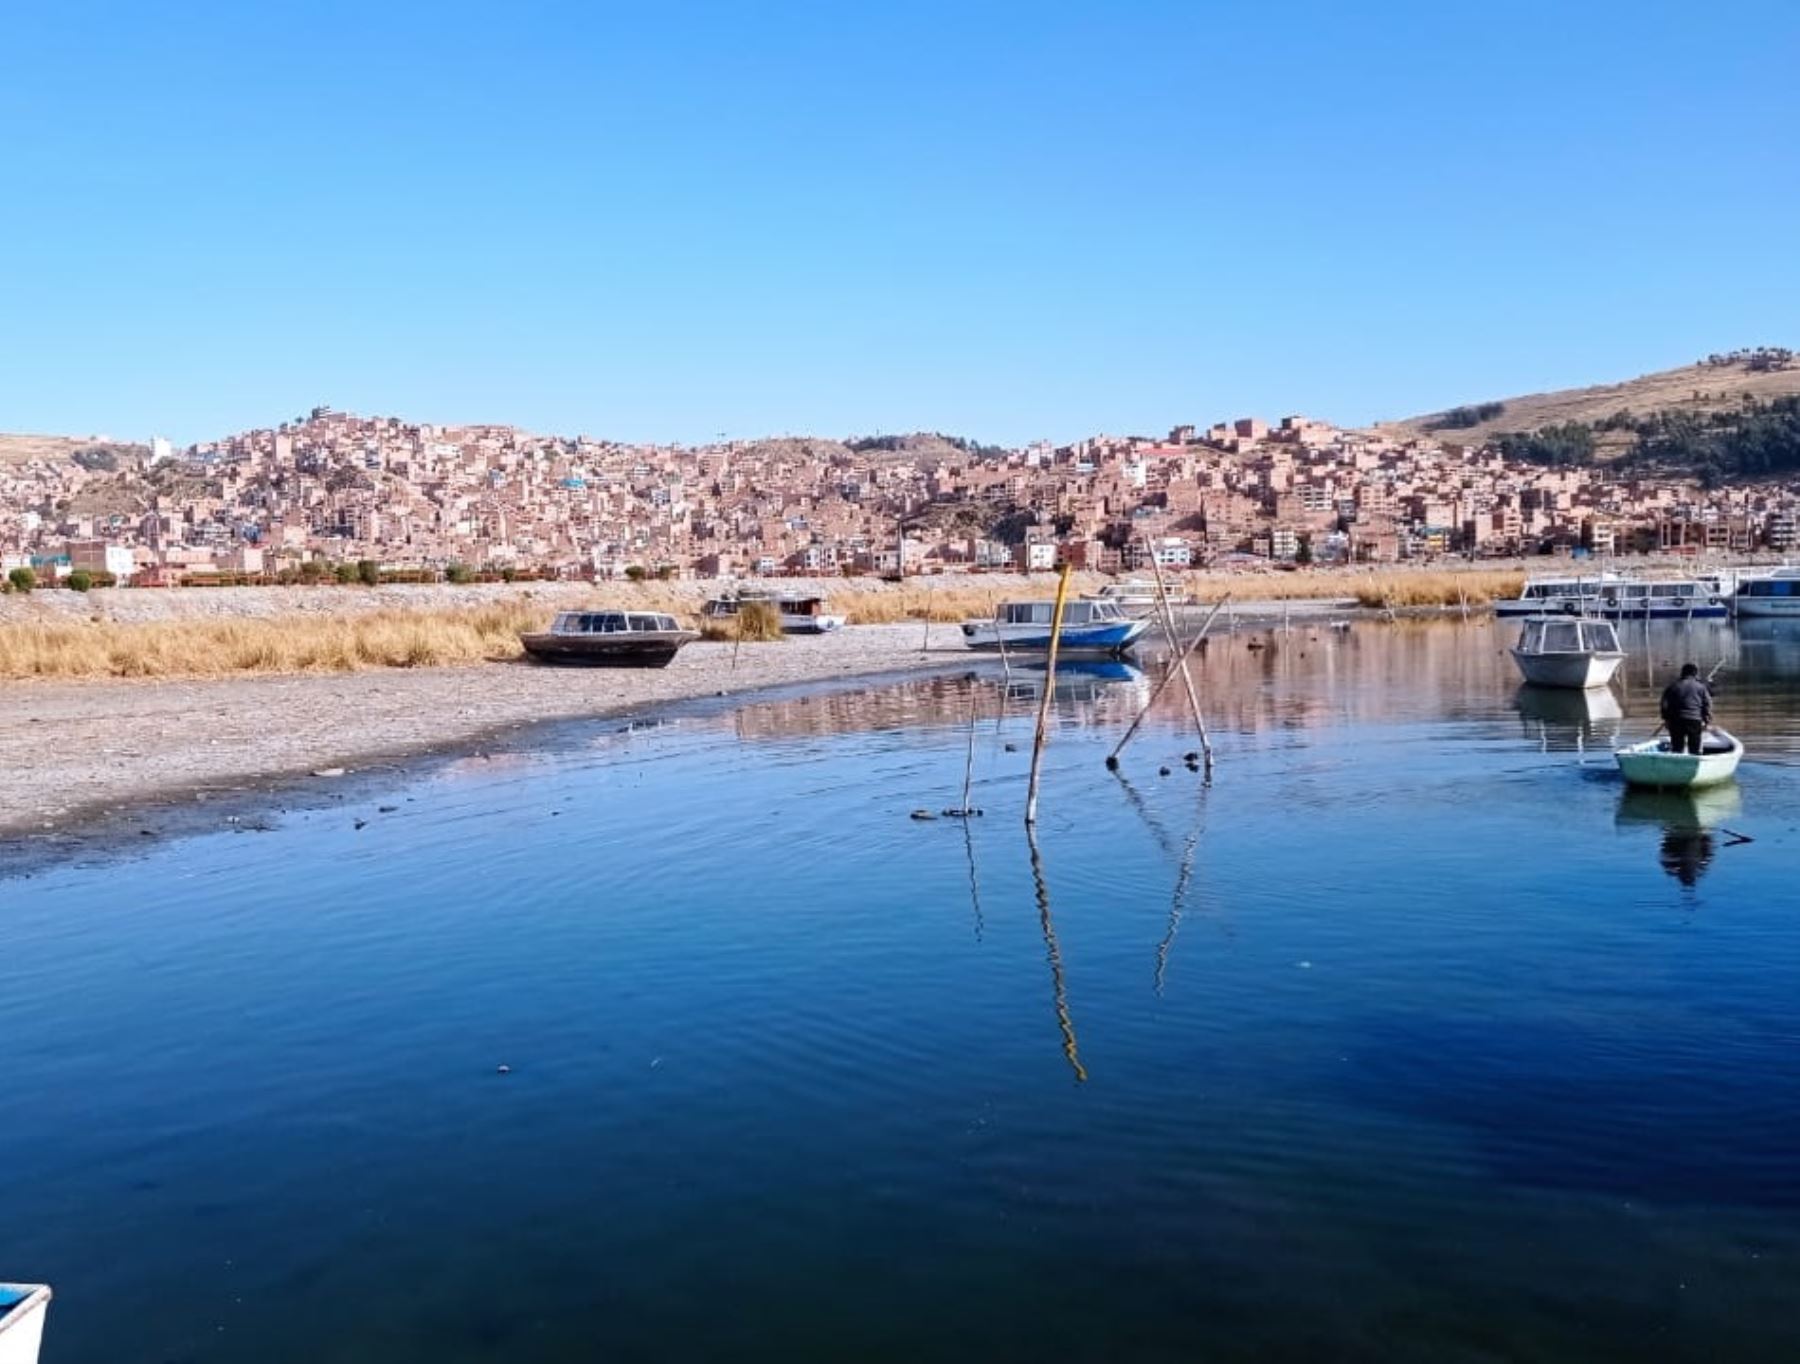 El bajo nivel del lago Titicaca a causa del déficit hídrico que afecta a la región Puno tuvo un récord histórico al registrar un descenso de 62 cm., confirmó el Senamhi Puno. Foto: Sergio Alejo Mamani.